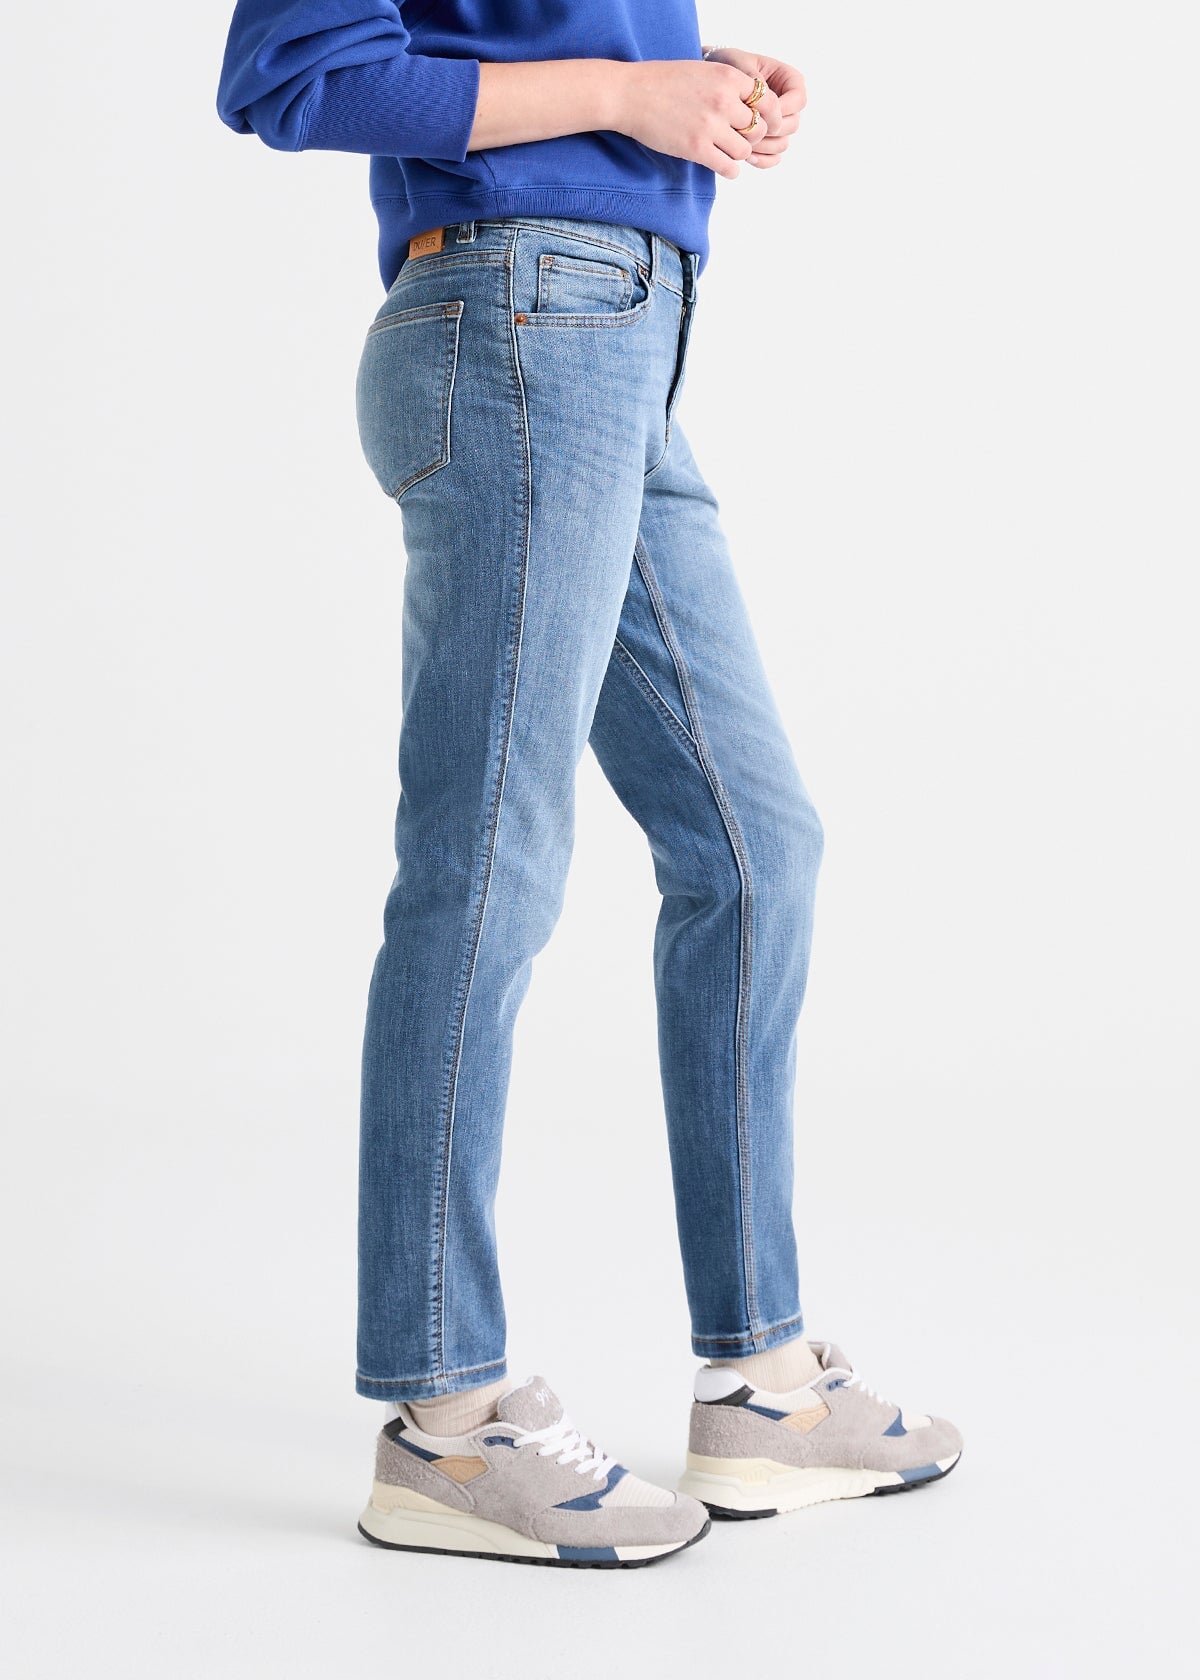 Jielur Casual Vintage Jeans Women Korean Style Denim Pants High Waist Wide  Leg Jeans Lady Fashion Loose Streetwear Jeans Female - Jeans - AliExpress